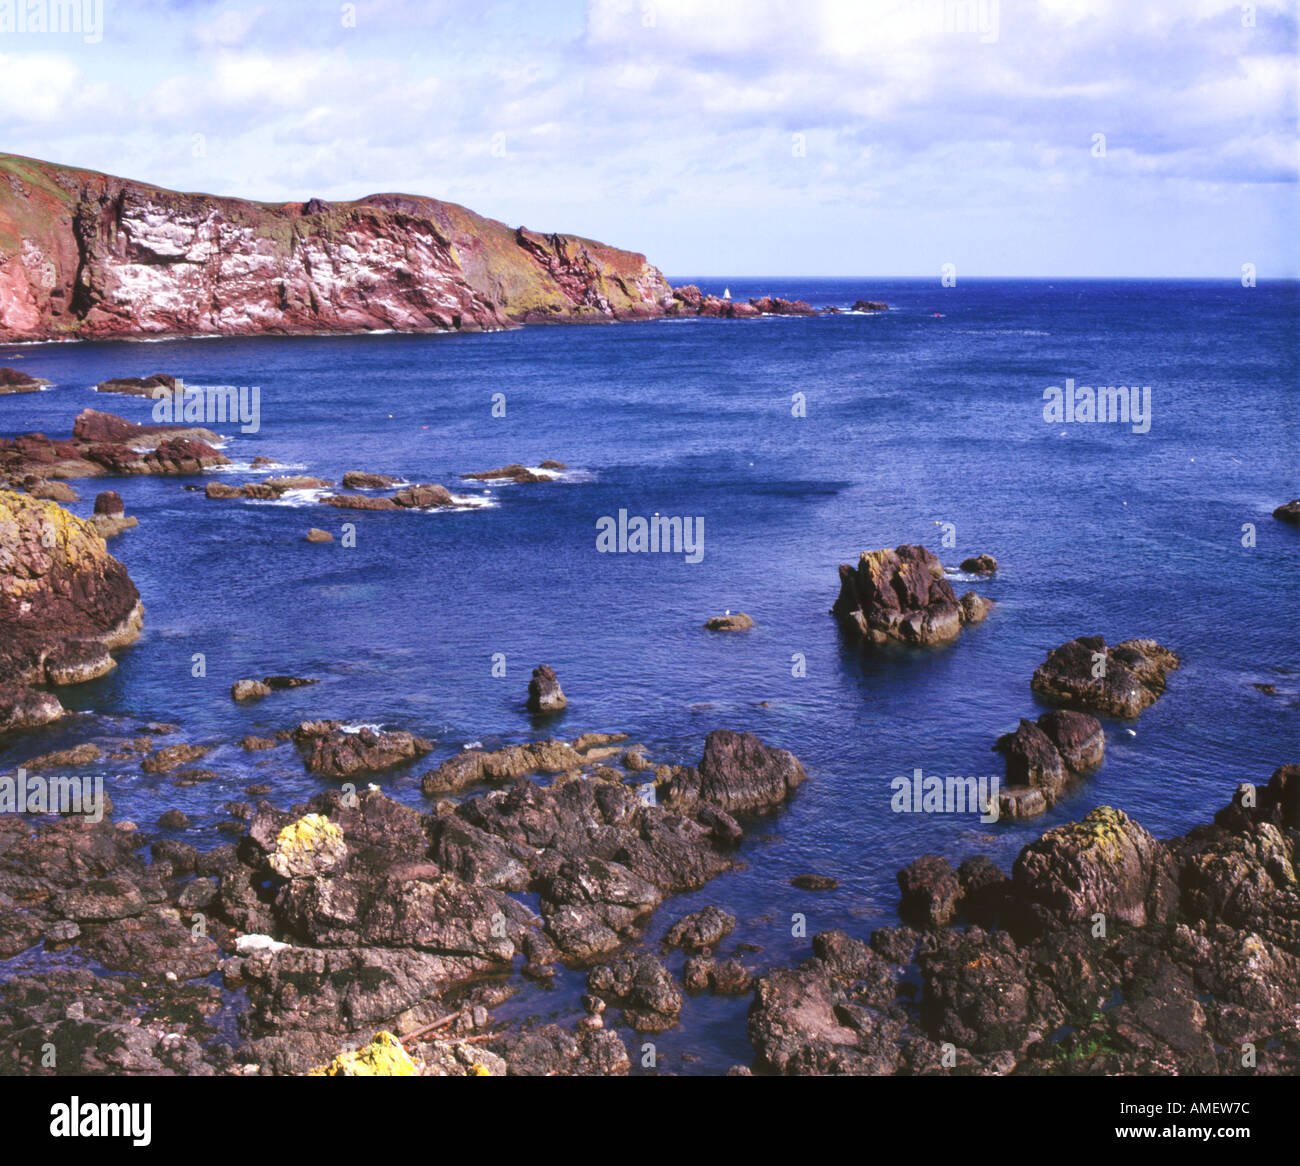 St. Abbs Head Nordsee Ostküste Schottland UK Vereinigtes Königreich GB Großbritannien britischen Inseln EU Europäische Union Europa Stockfoto